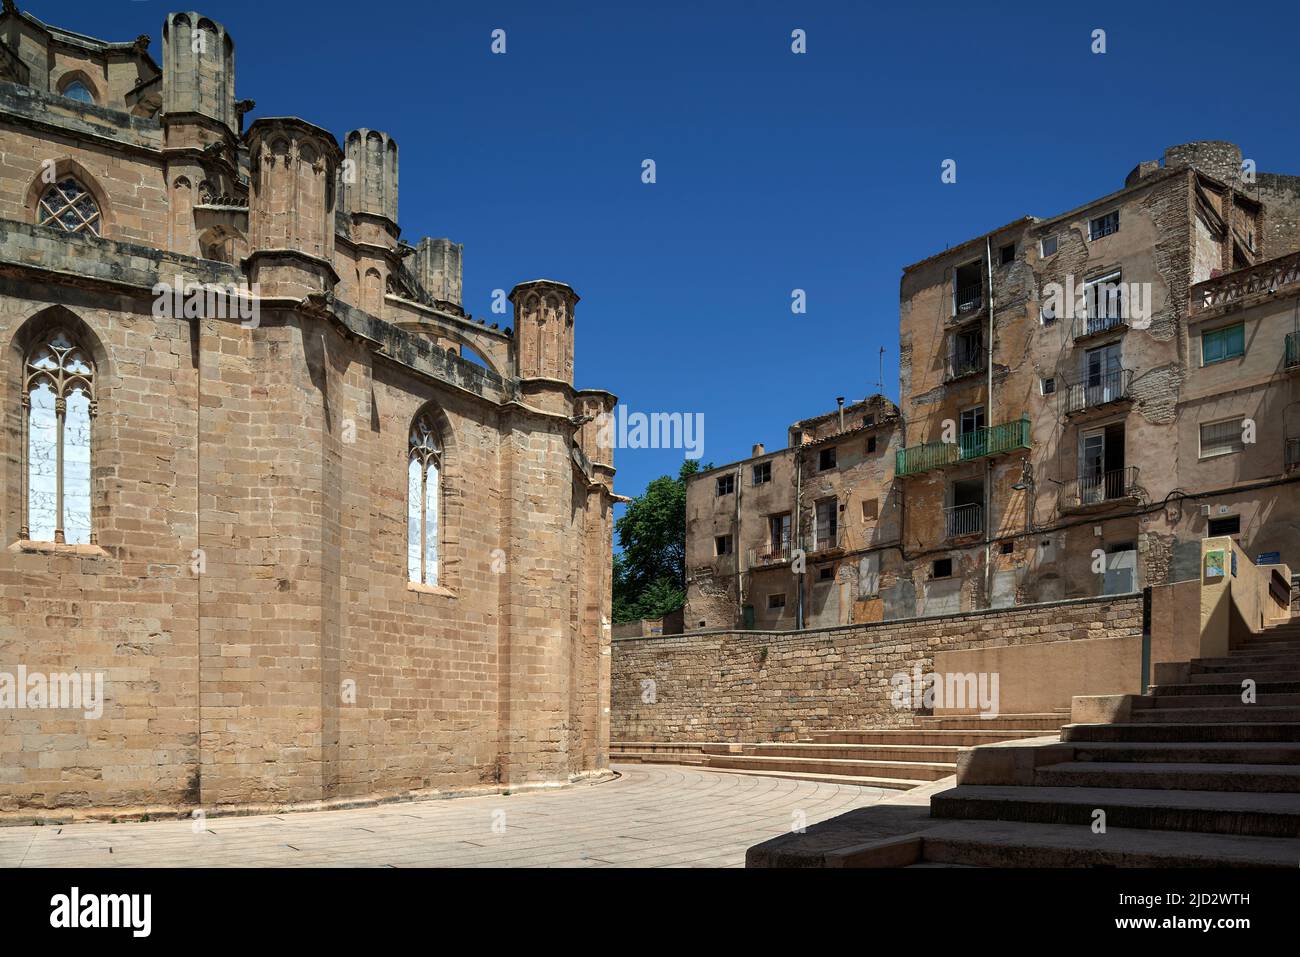 Extérieur gothique catalan de la basilique cathédrale de Santa María de Tortosa datant du 14th siècle, province de Tarragone, Catalogne, Espagne, Europe Banque D'Images